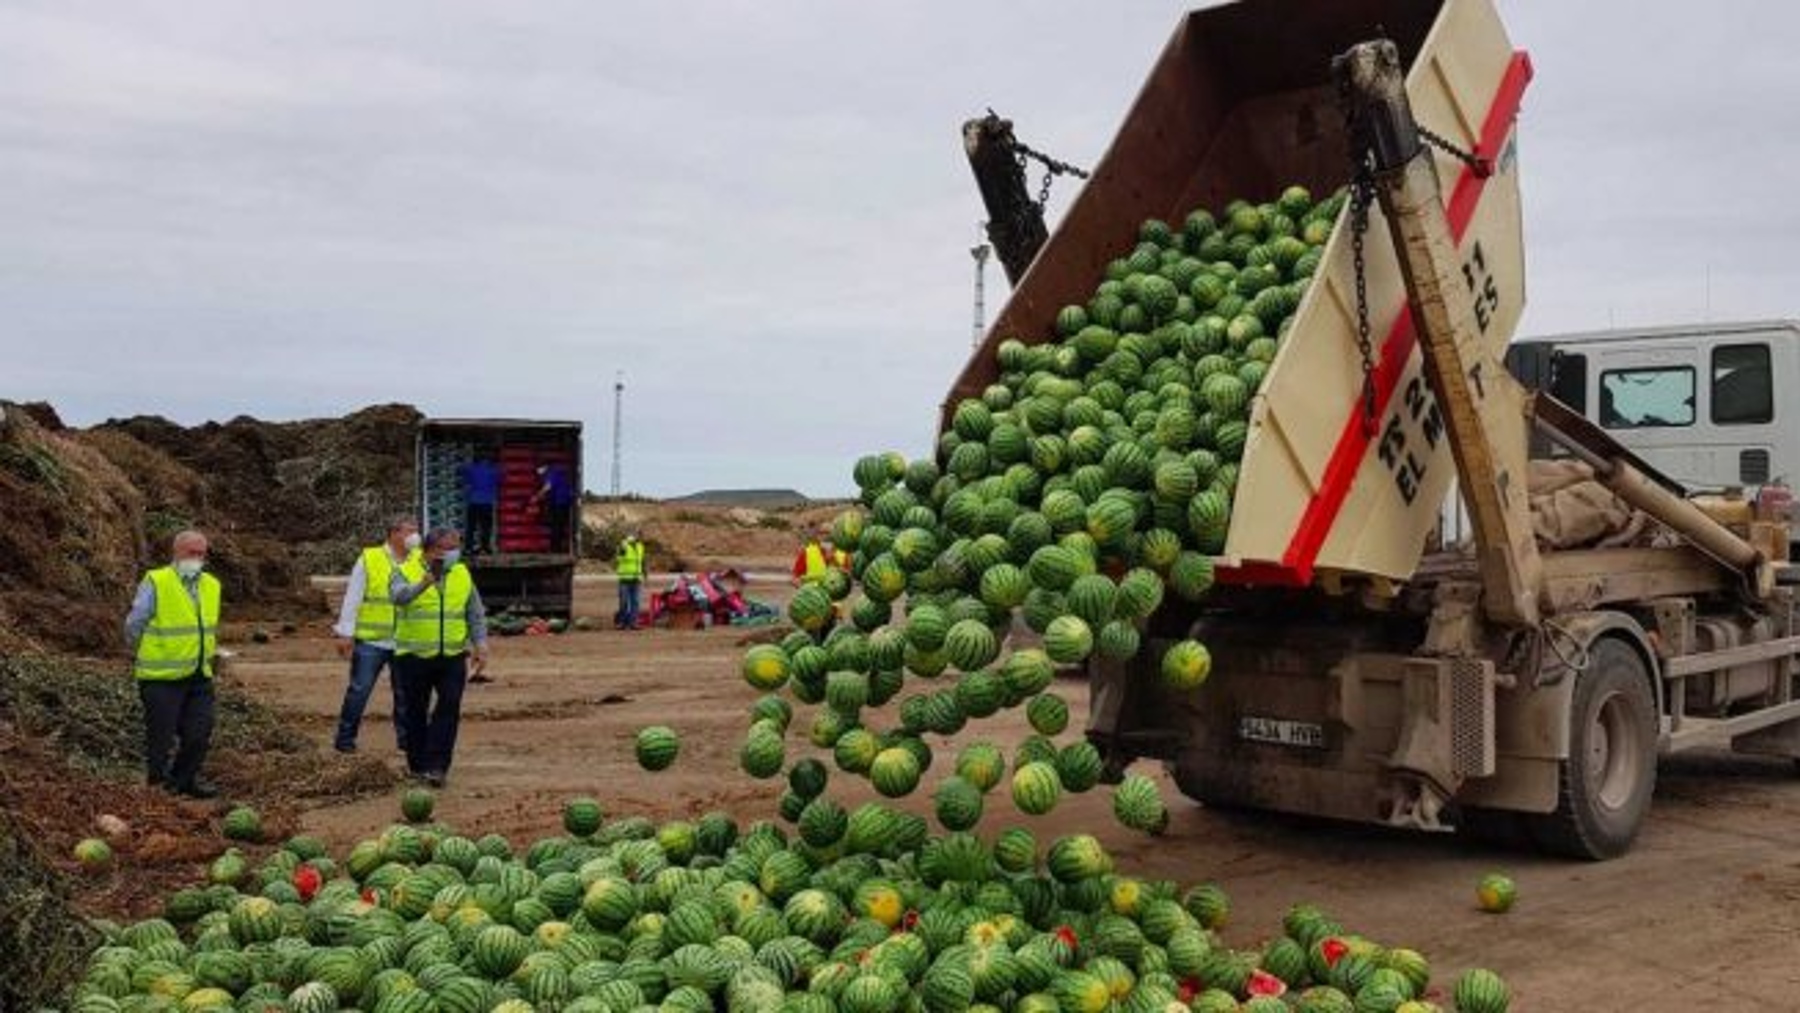 Productores agrícolas de Almería tiran más de 150 toneladas de melón y sandía en protesta por los bajos precios (Coexphal).